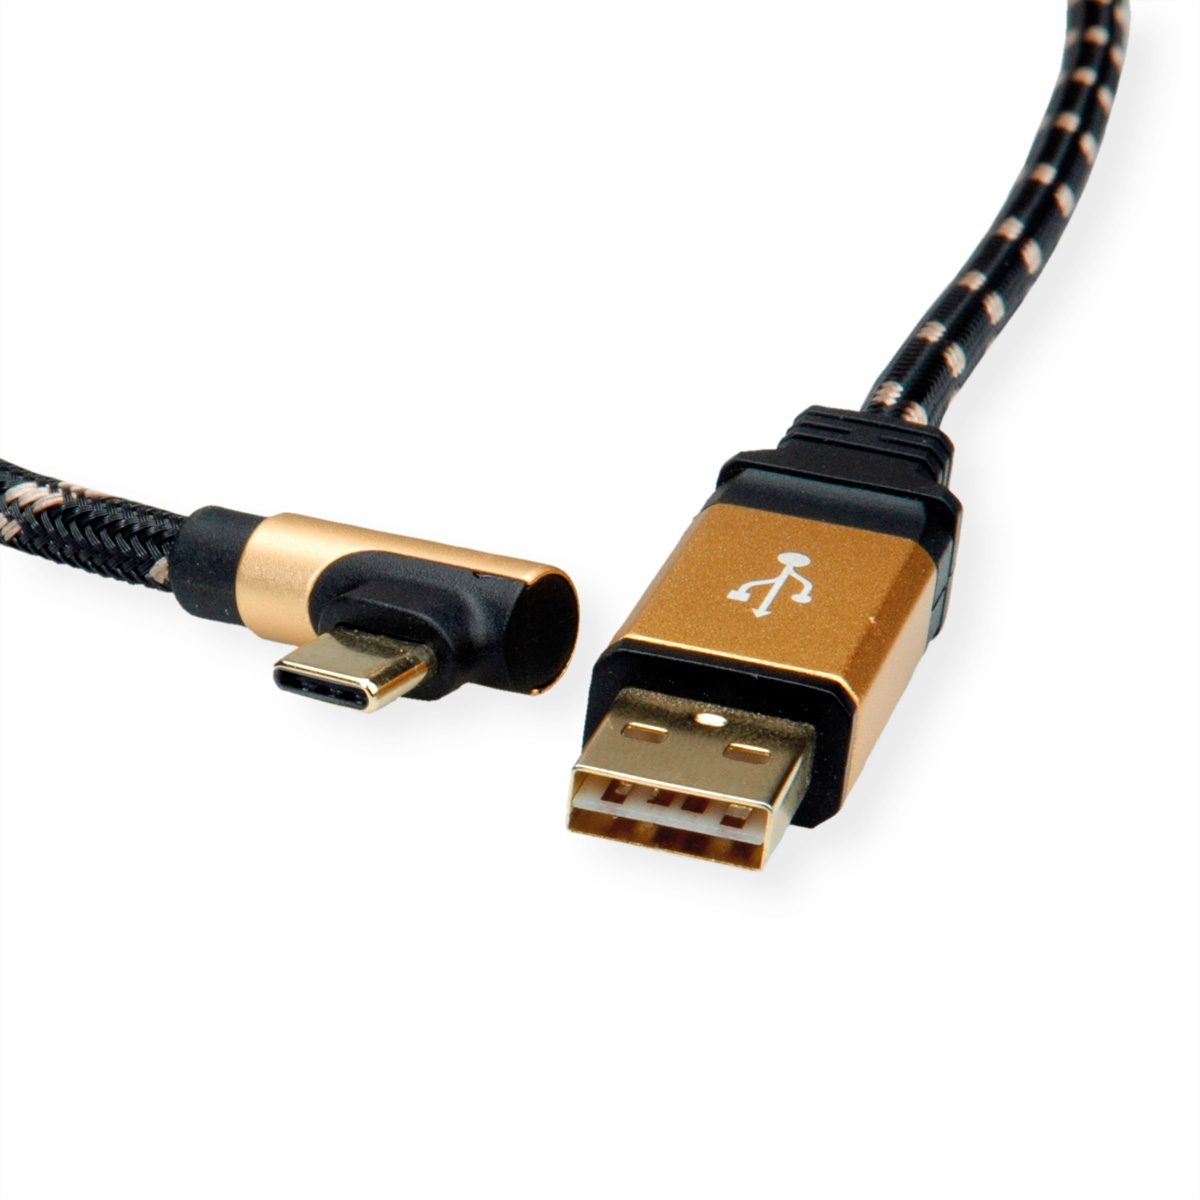 ROLINE GOLD USB 2.0 2.0 ST C A reversibel USB ST USB Kabel gewinkelt USB Kabel, 